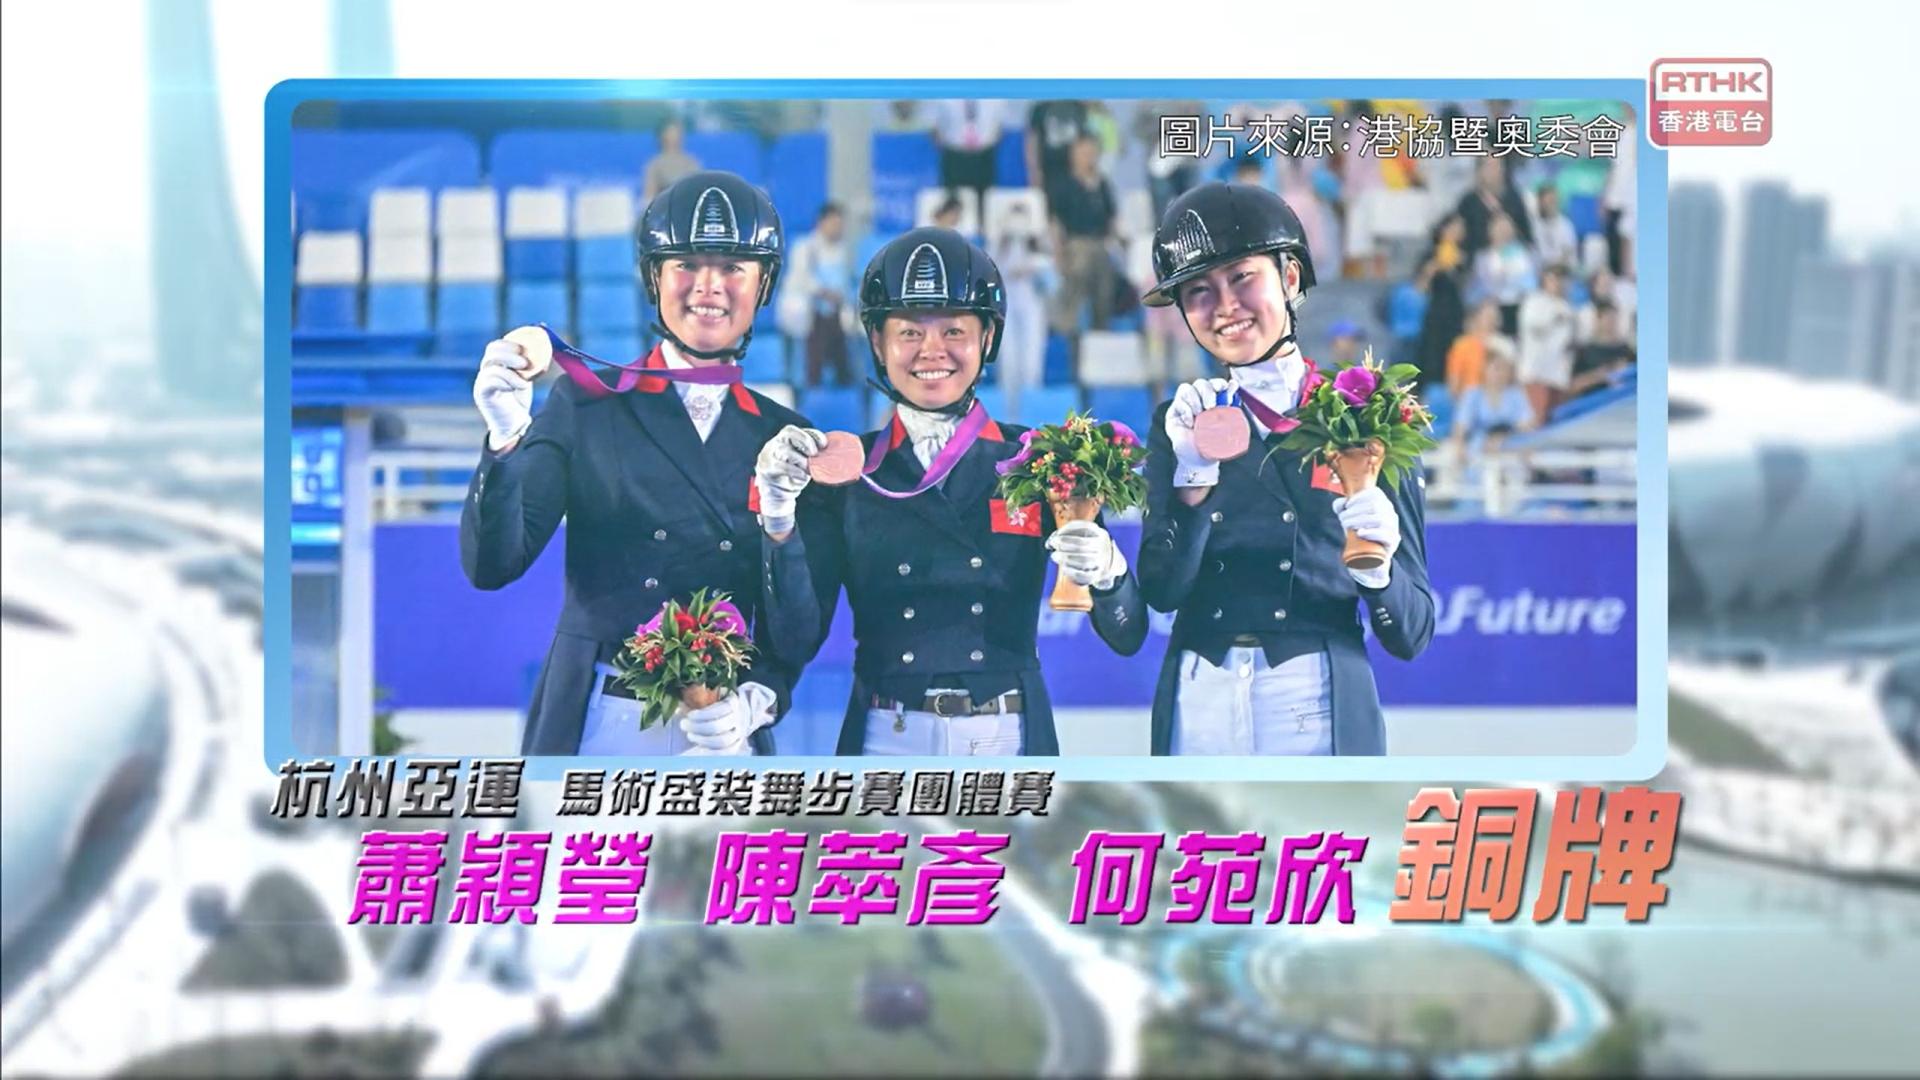 恭喜香港马术代表 萧颖莹、陈萃彦、何苑欣 于杭州亚运首夺马术盛装舞步赛团体铜牌！